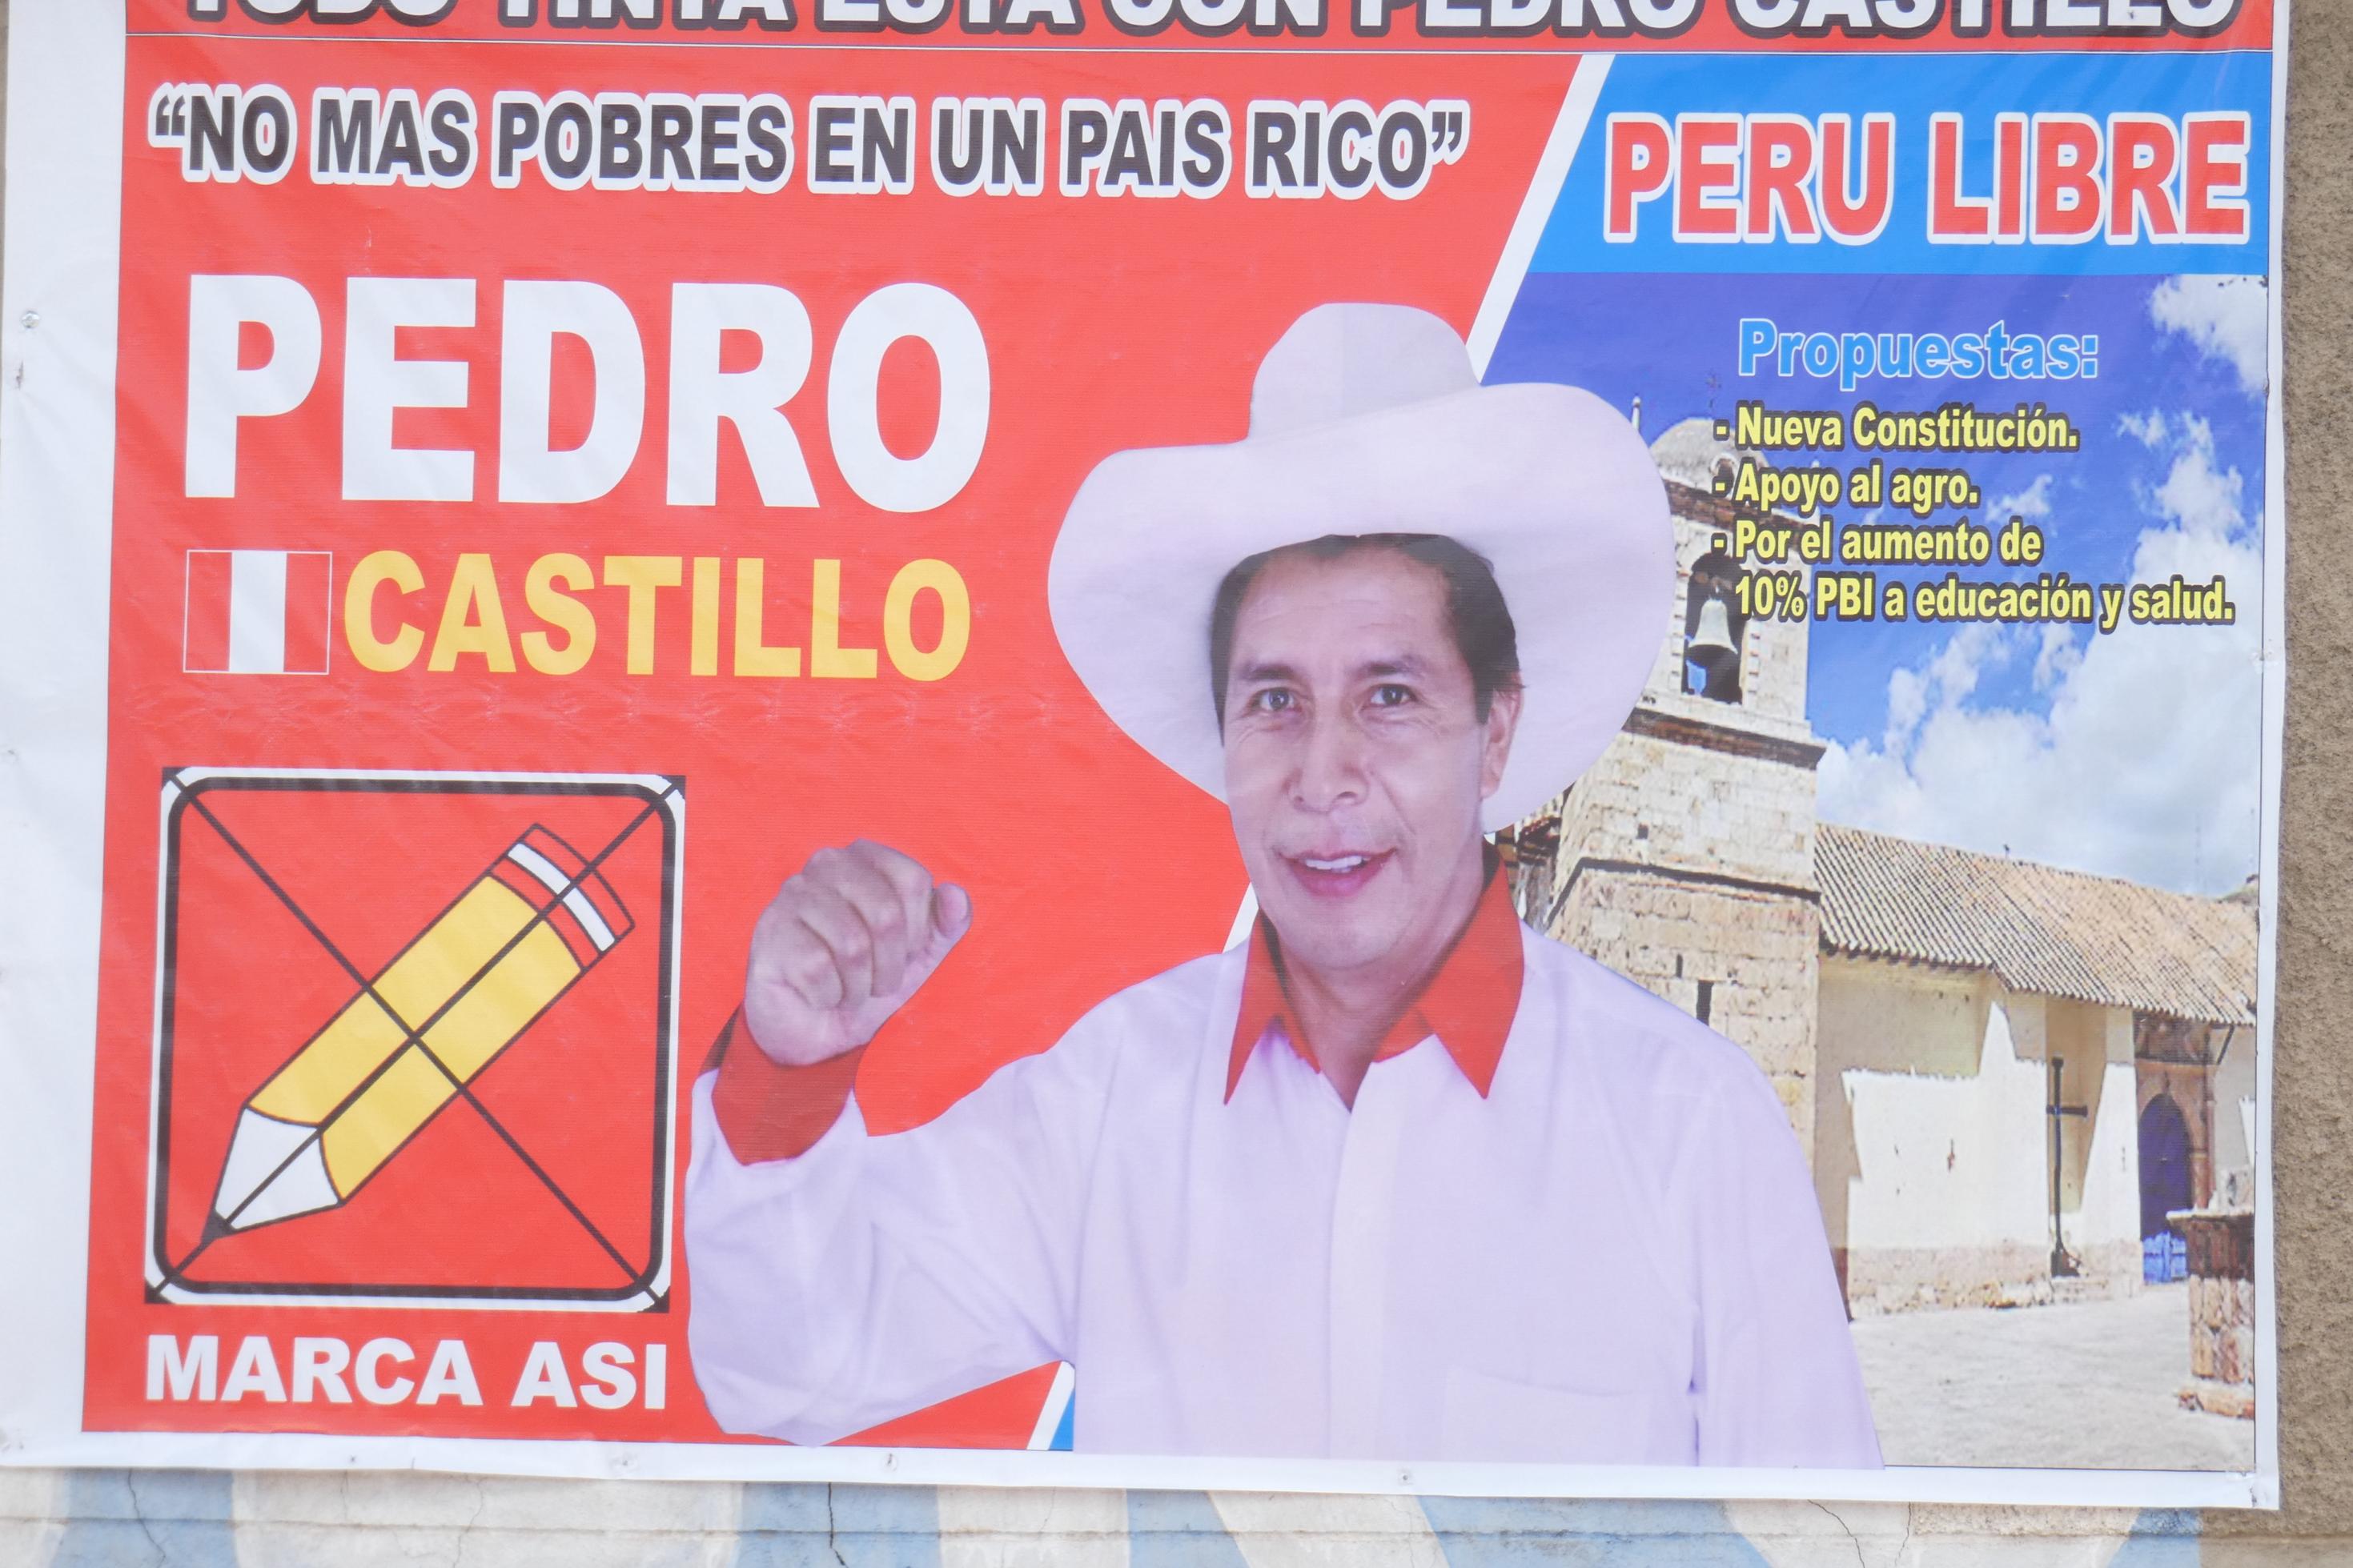 Mann mit Strohhut auf einem Plakat mit rotem Hintergrund. Darauf mehrere Wahlsprüche in spanisch.